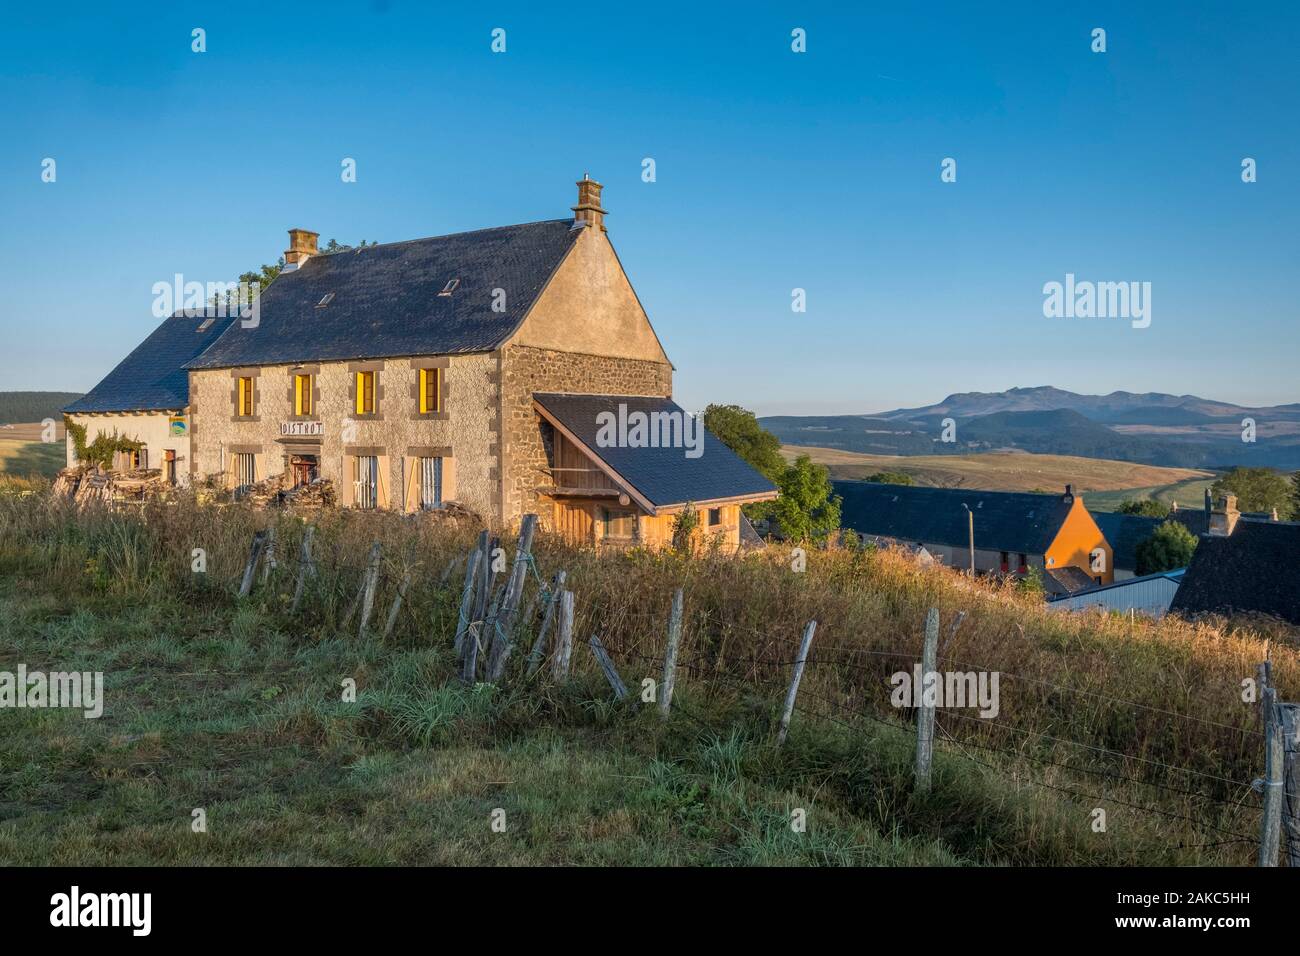 France, Puy de Dome, Compains, hamlet of Brion, Cezallier plateau, Parc naturel régional des Volcans d'Auvergne, Auvergne Volcanoes Regional Nature Park Stock Photo